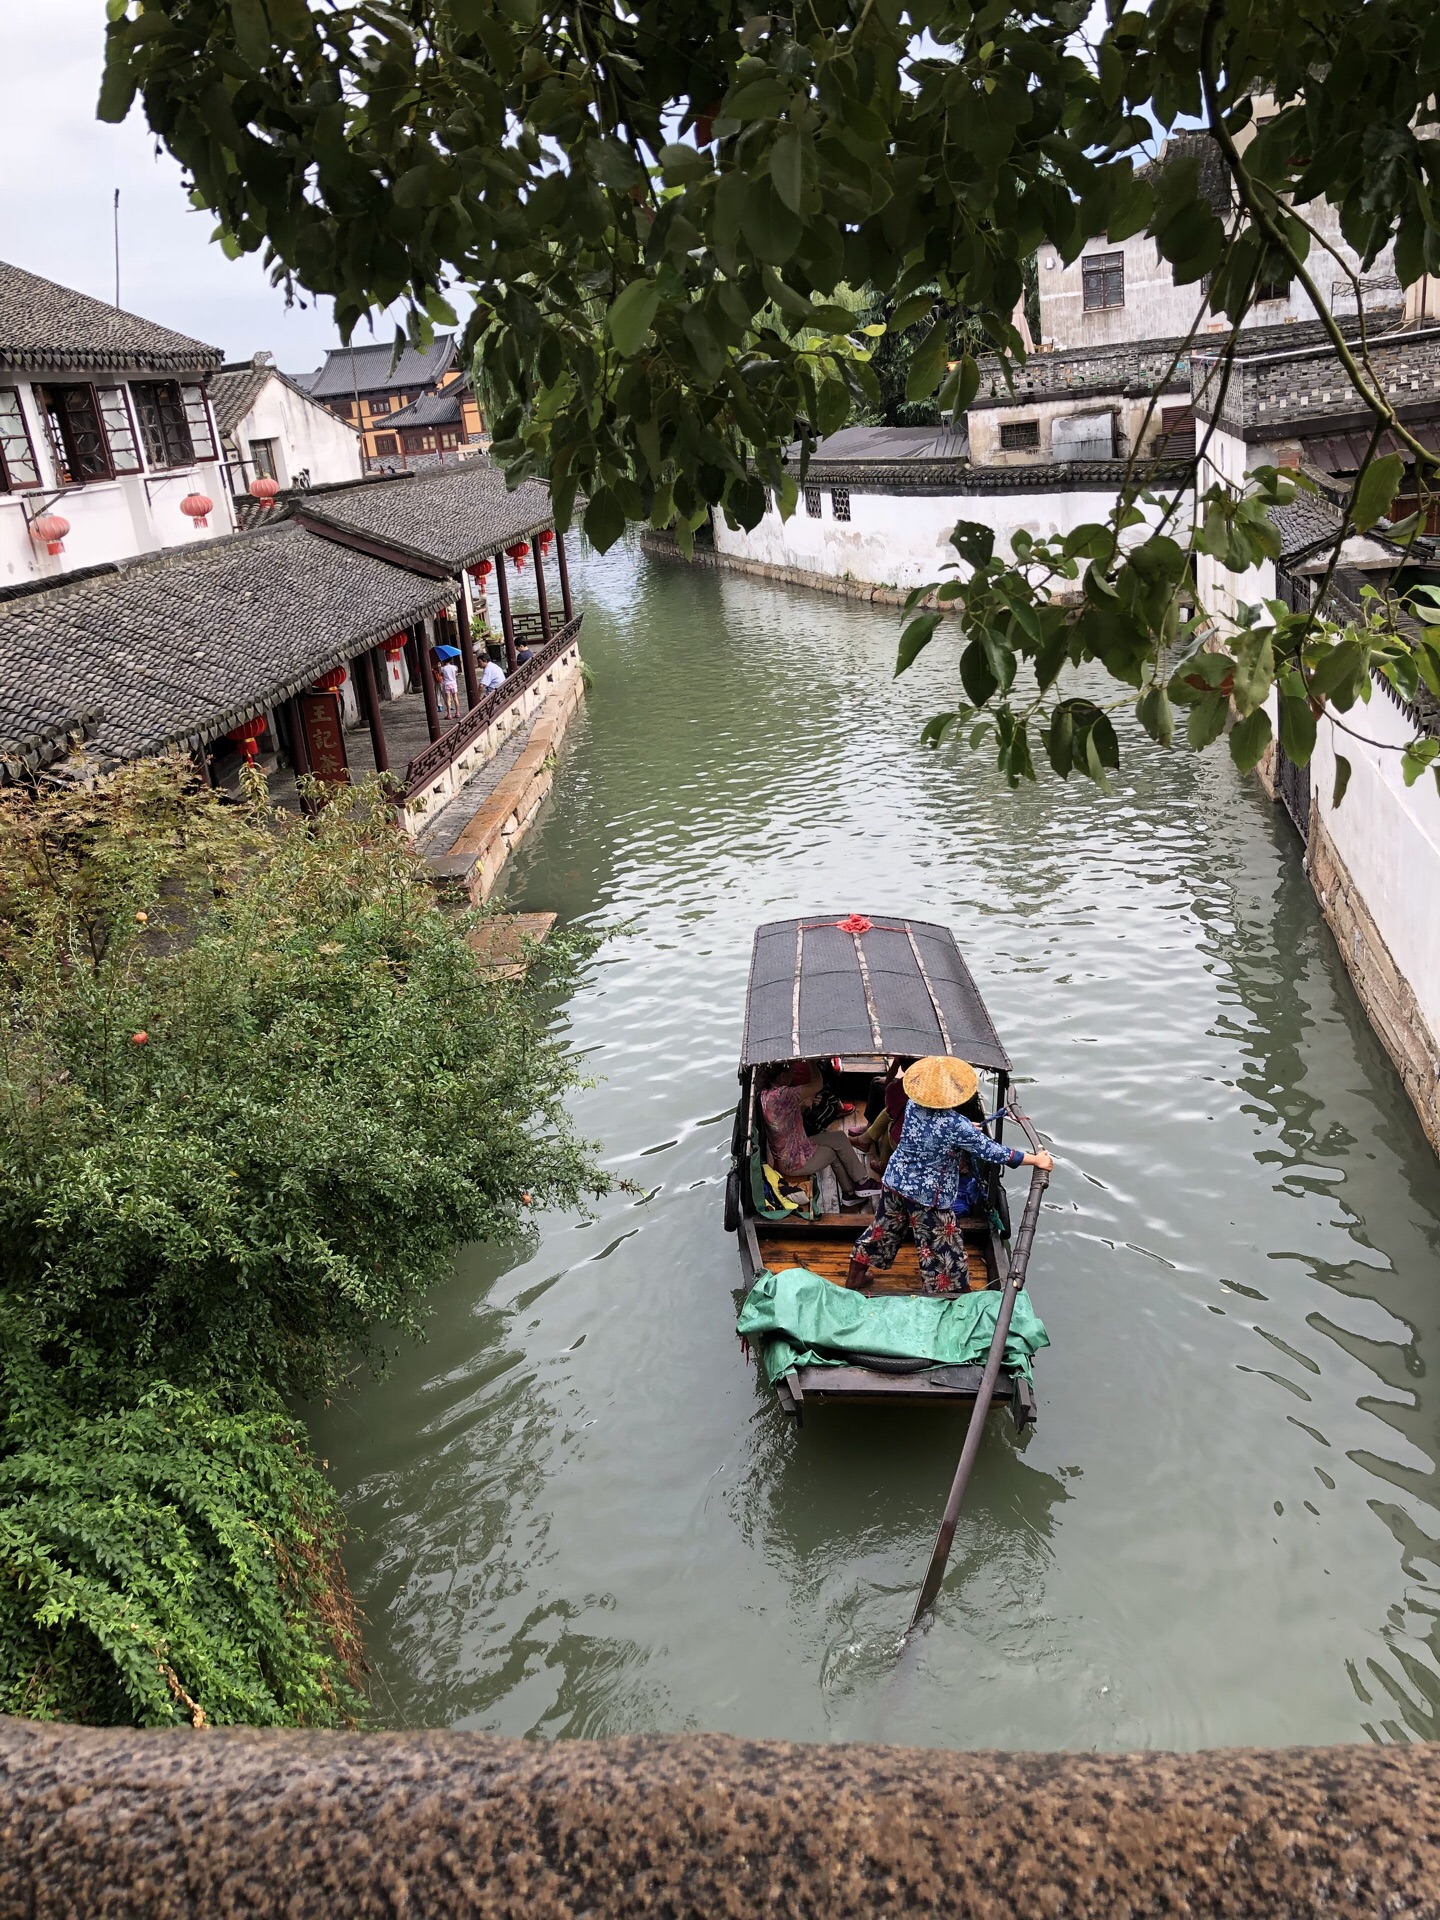 【携程攻略】昆山锦溪古镇景点,这个古镇范围有点大的，长桥湖泊，老街新貌。上海的后花园，不用门票…